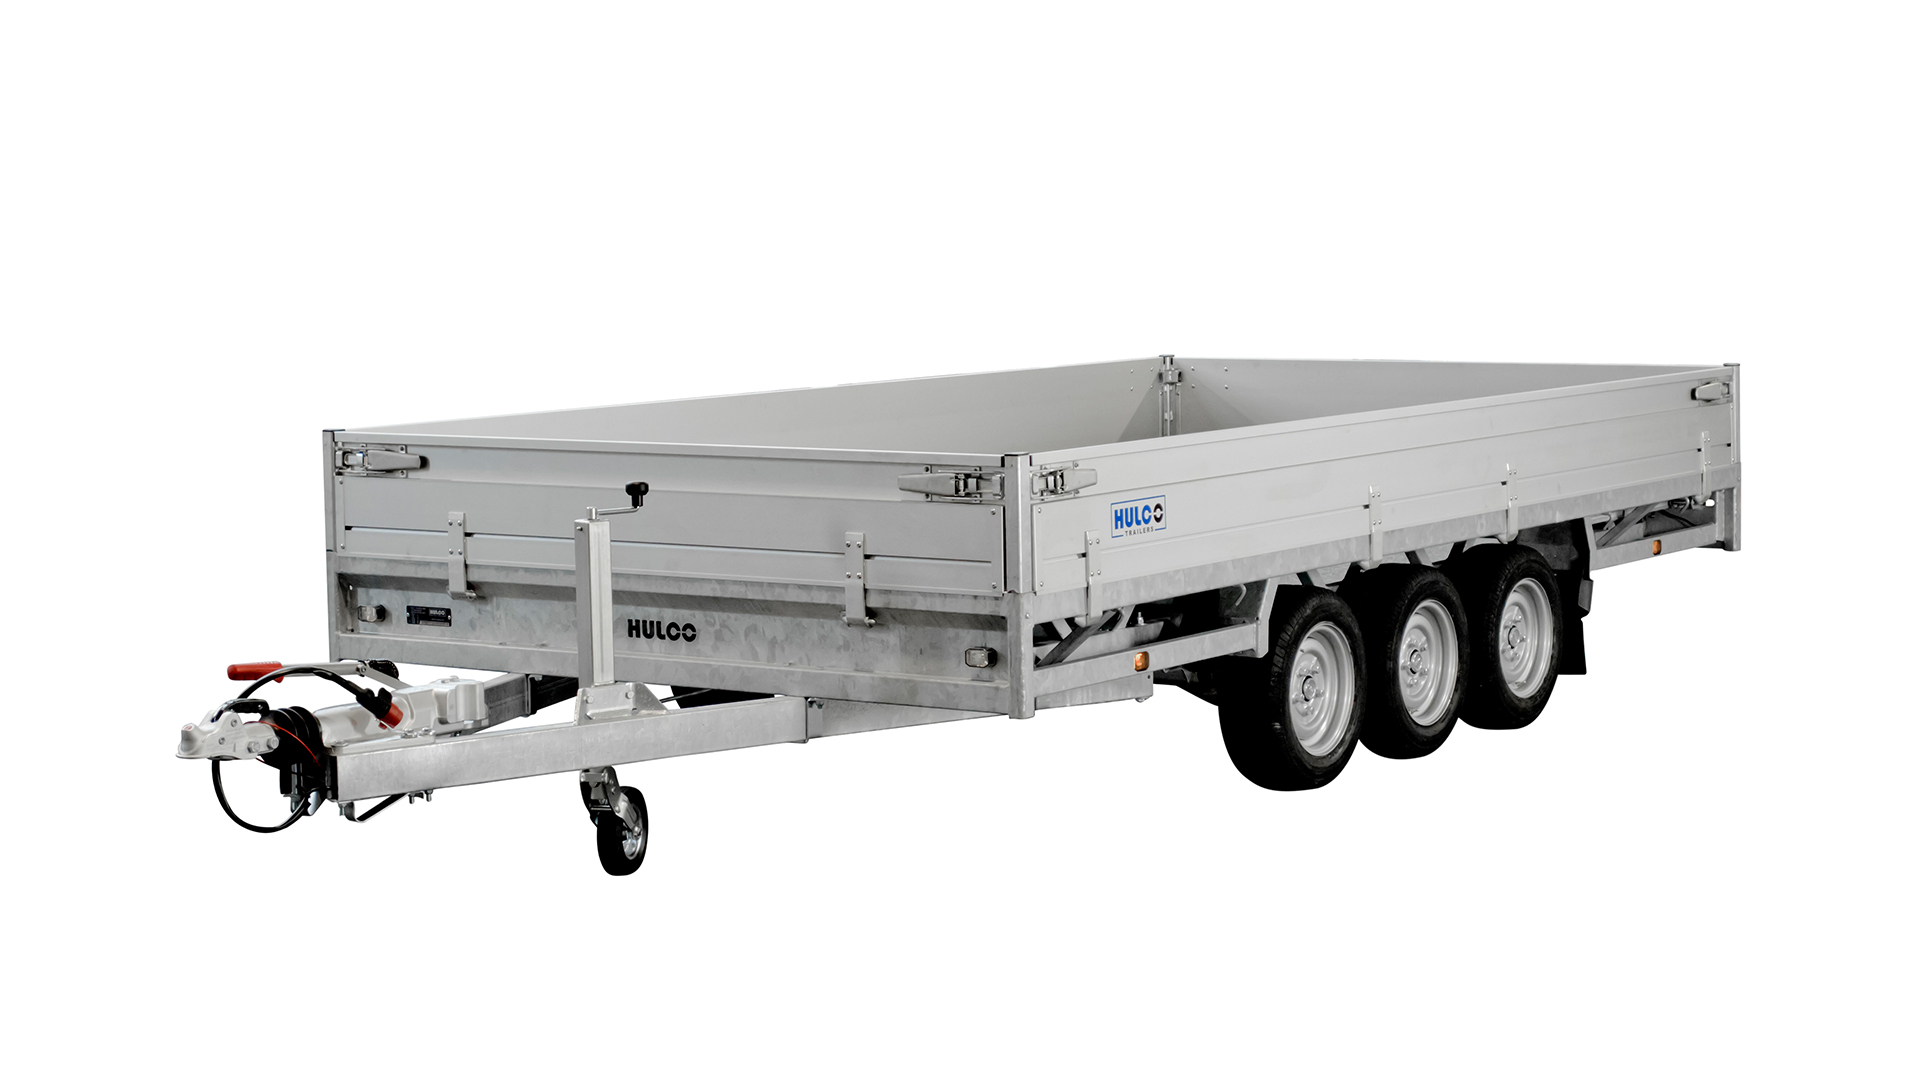 Hulco PKW Anhänger Hochlader Alu 3500 kg, Ladefläche 4,05 x2,23 m - Tridem